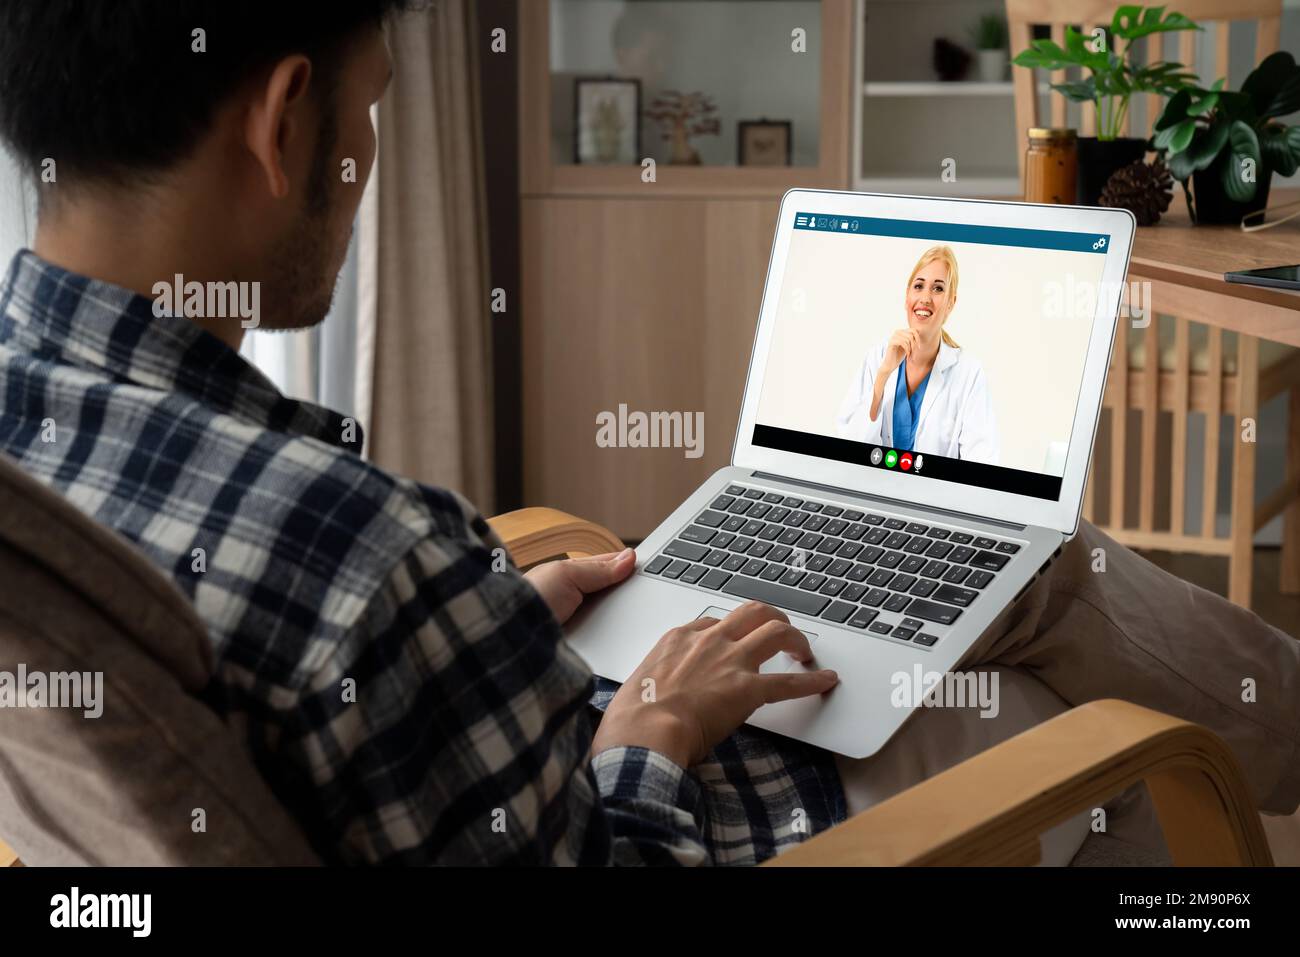 Appel vidéo du médecin en ligne via l'application logicielle de télémédecine Modish pour une réunion virtuelle avec le patient Banque D'Images